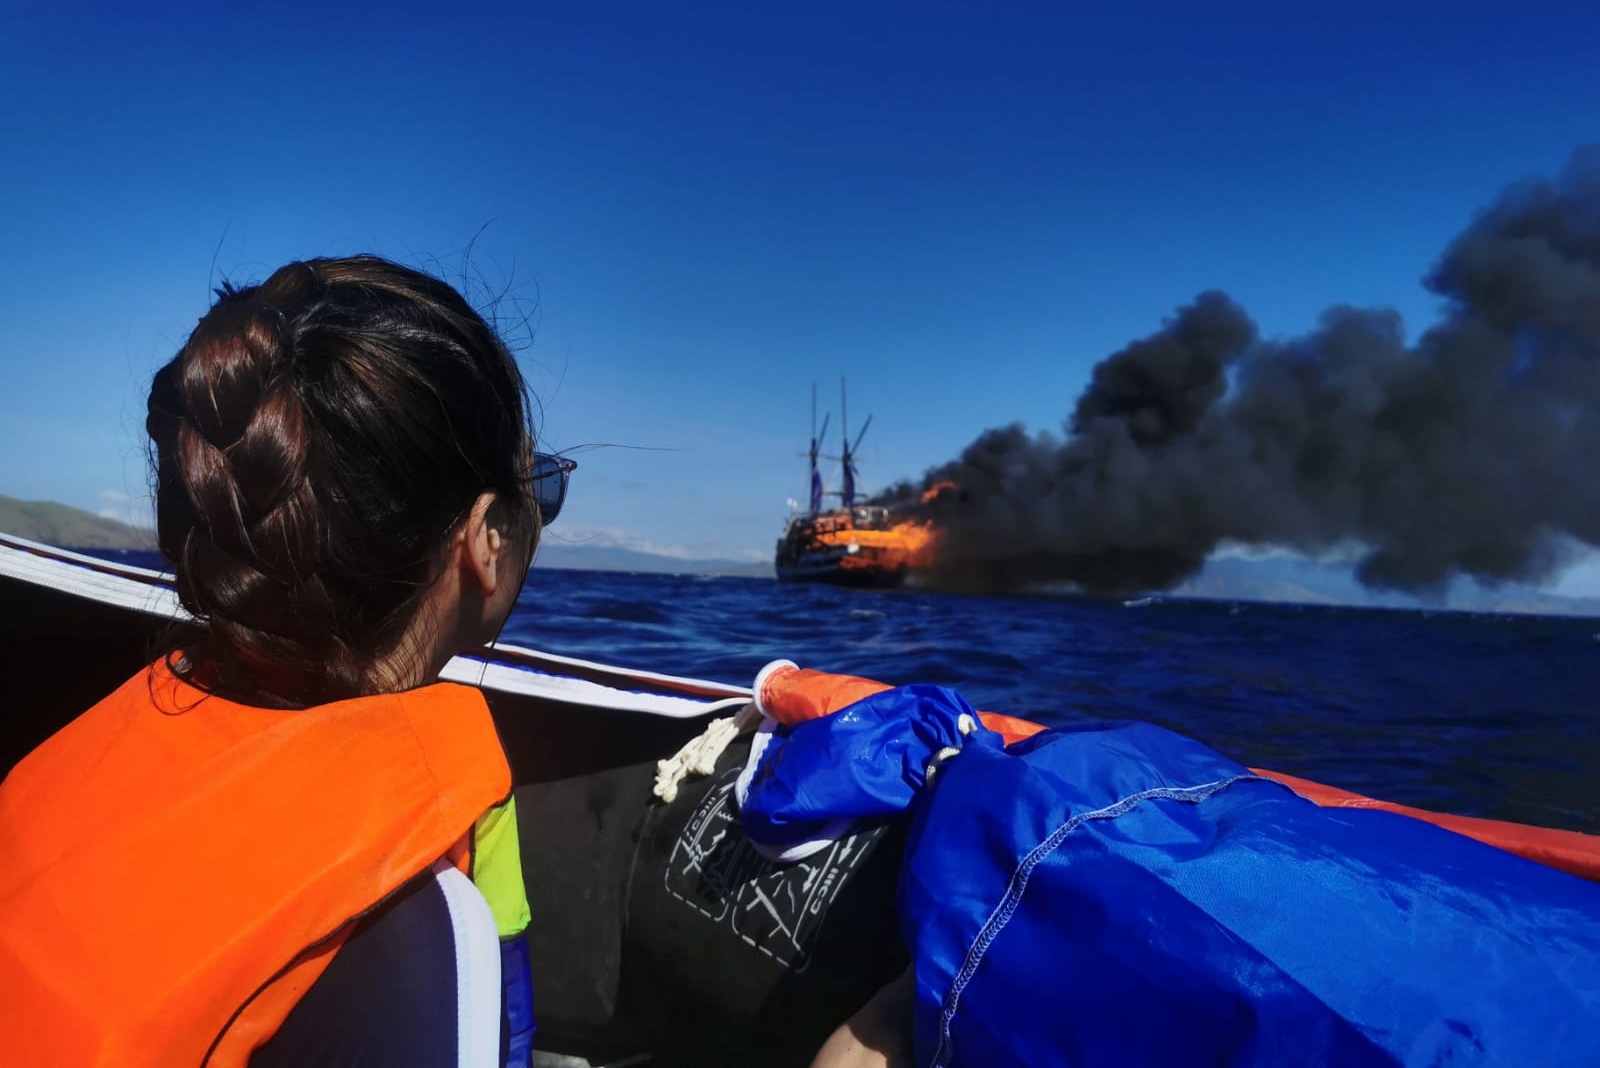 Brændende evakuering af dykkerbåd kaotisk, siger britiske dykkere